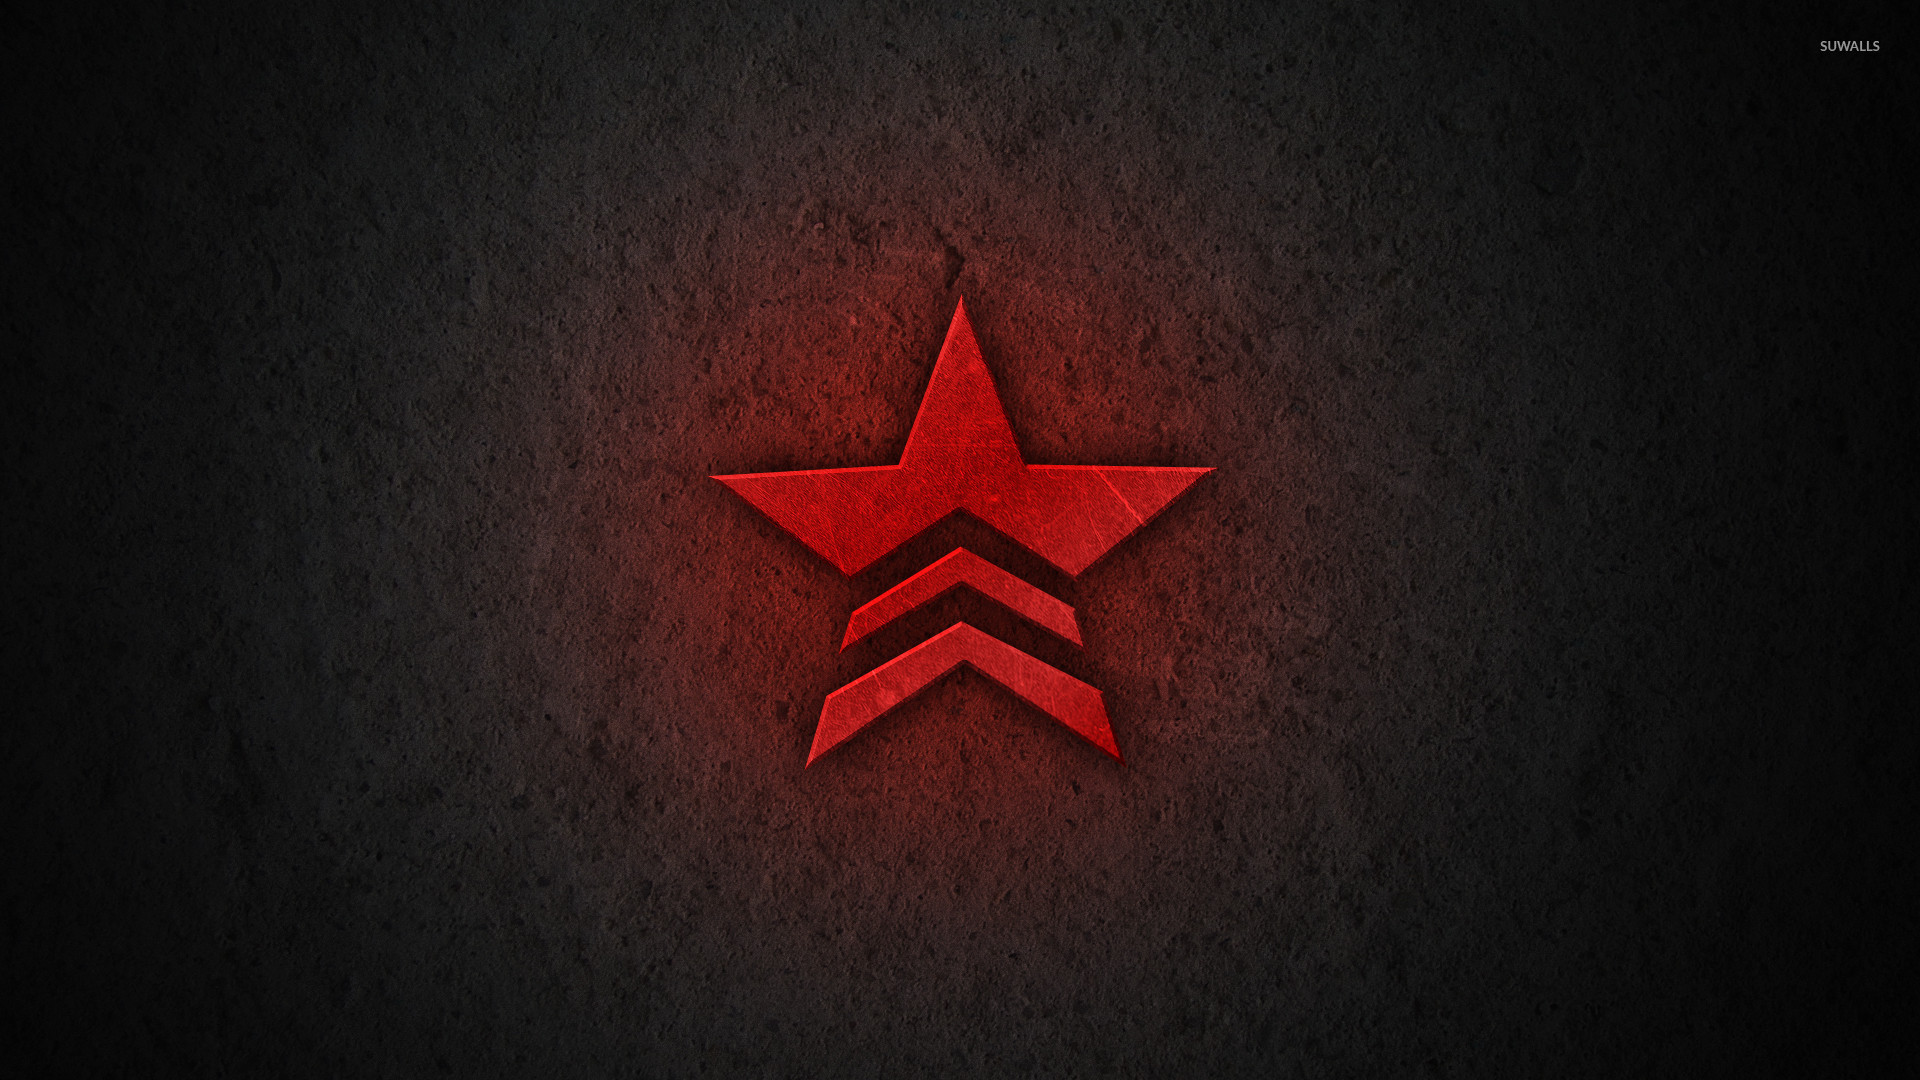 Red Mass Effect Star Logo Wallpaper Game